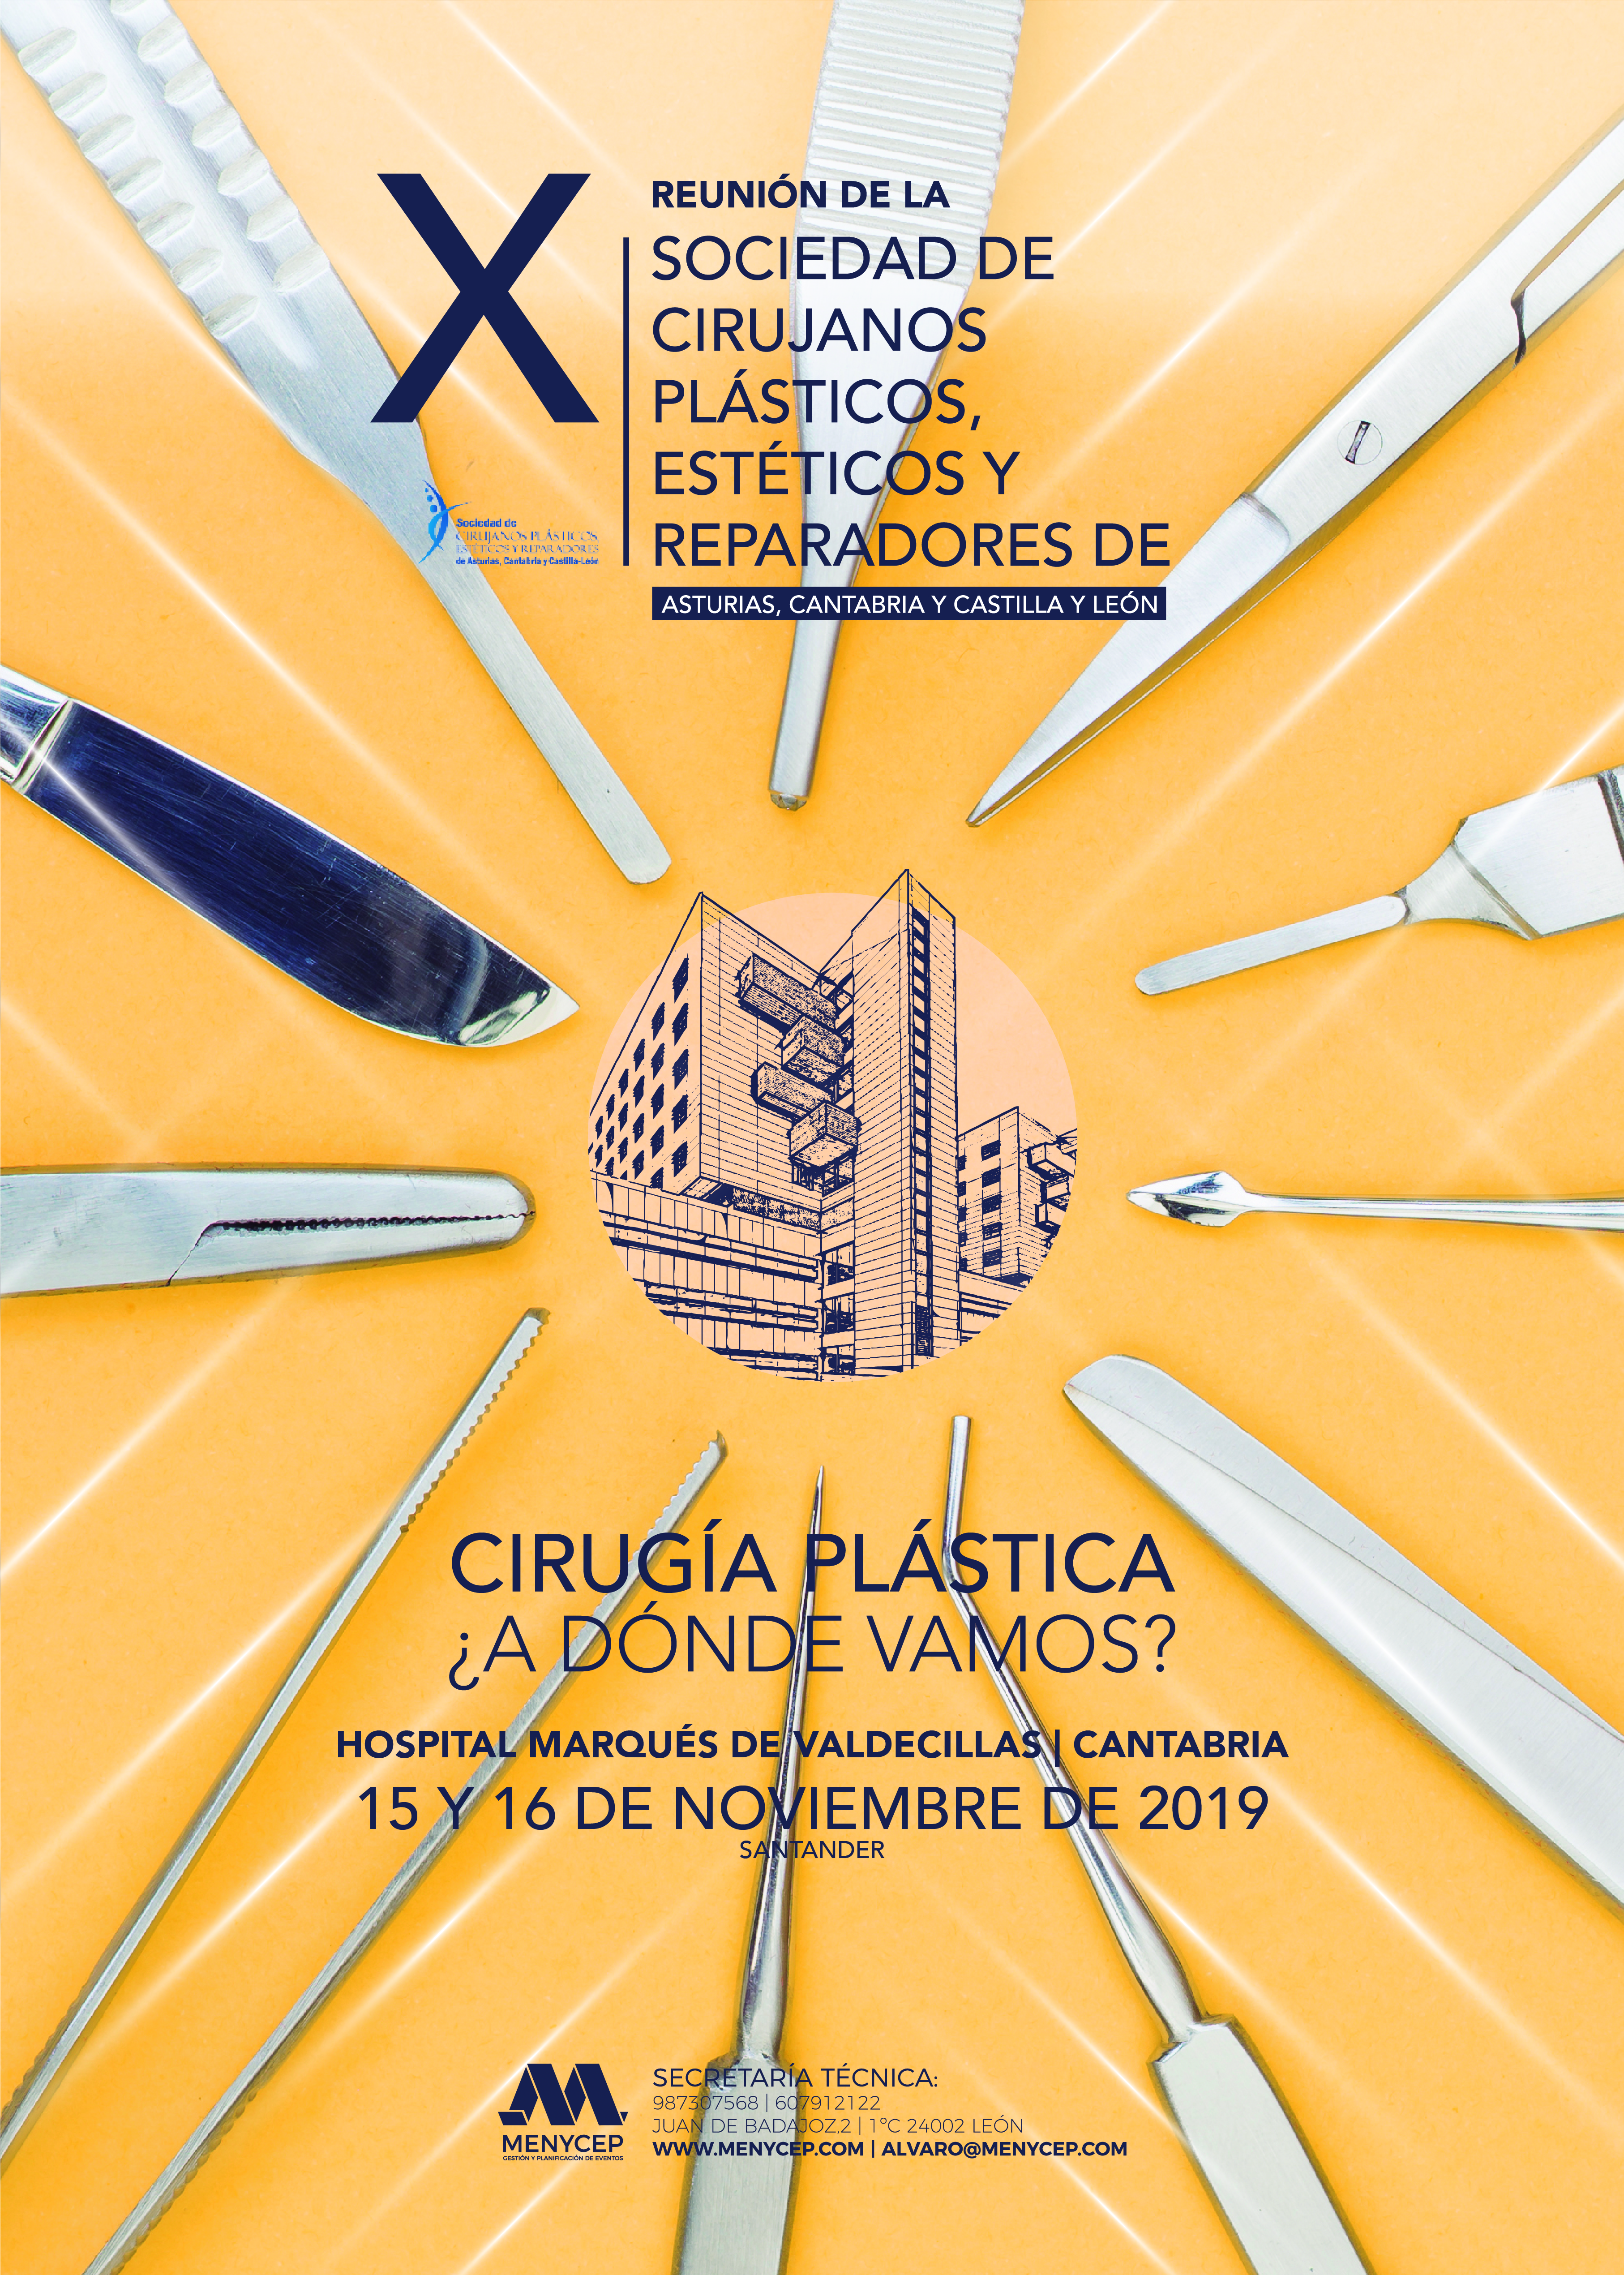 X Reunión de la Sociedad de Cirujanos Plásticos, Estéticos y Reparadores de Asturias, Cantabria y Castilla y León